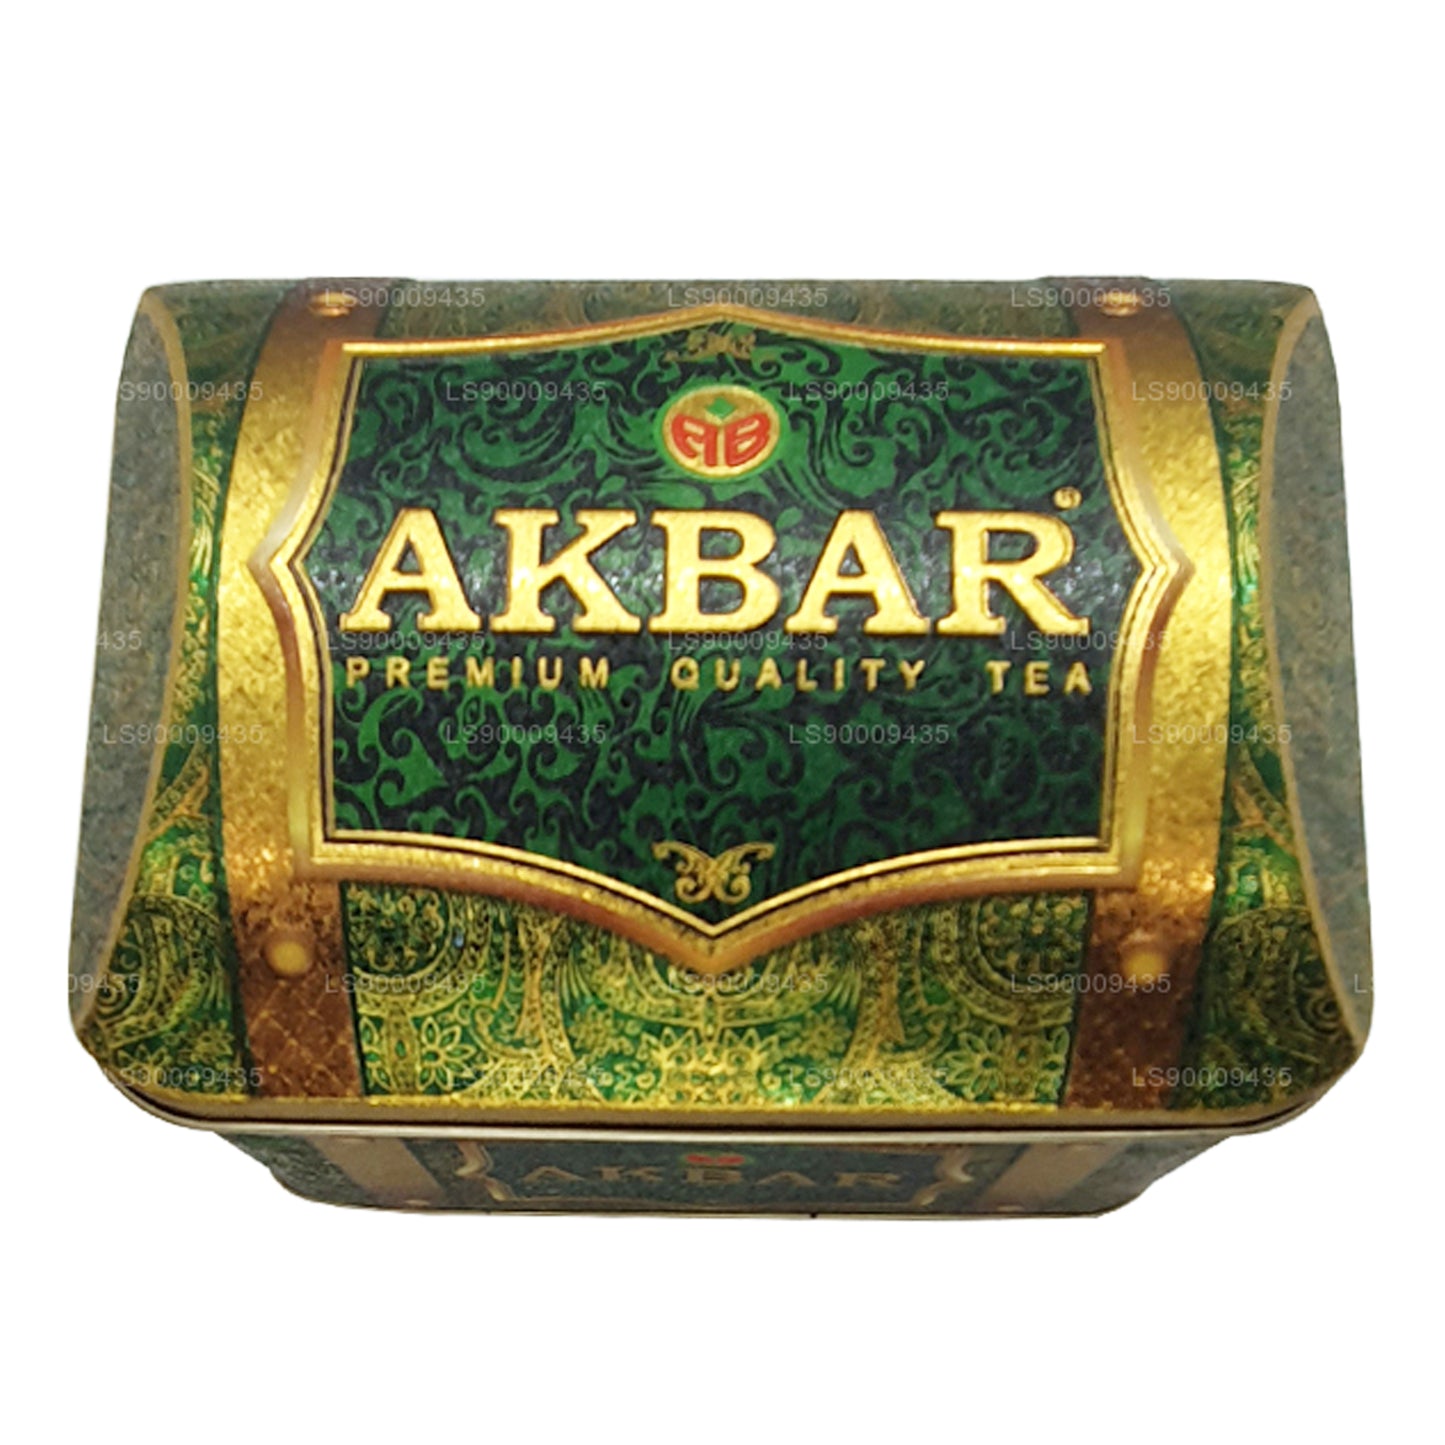 Caja con tesoros de guanábana rica de la colección exclusiva de Akbar (250 g)